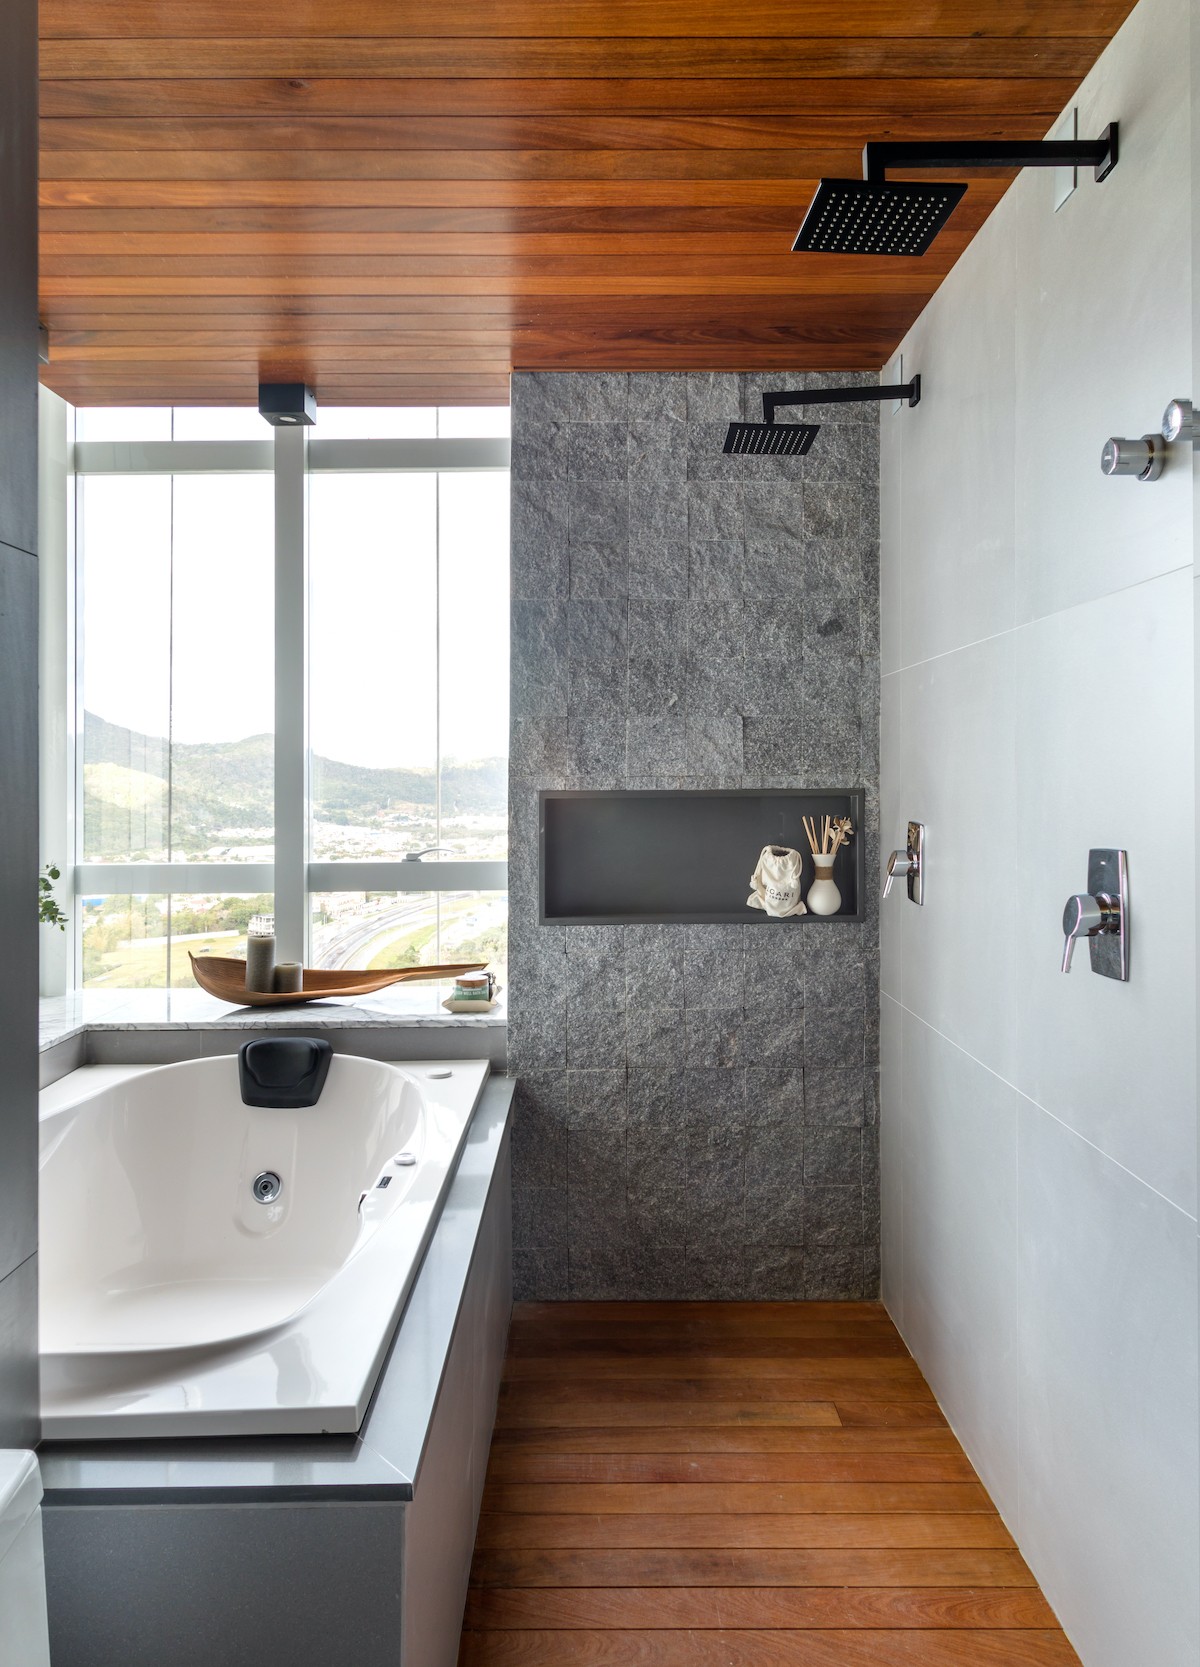 BANHEIRO | As pedras da Tessela conferem uma atmosfera natural no banheiro, proporcionando relaxamento para o momento do banho (Foto: Divulgação / Fábio Severo)